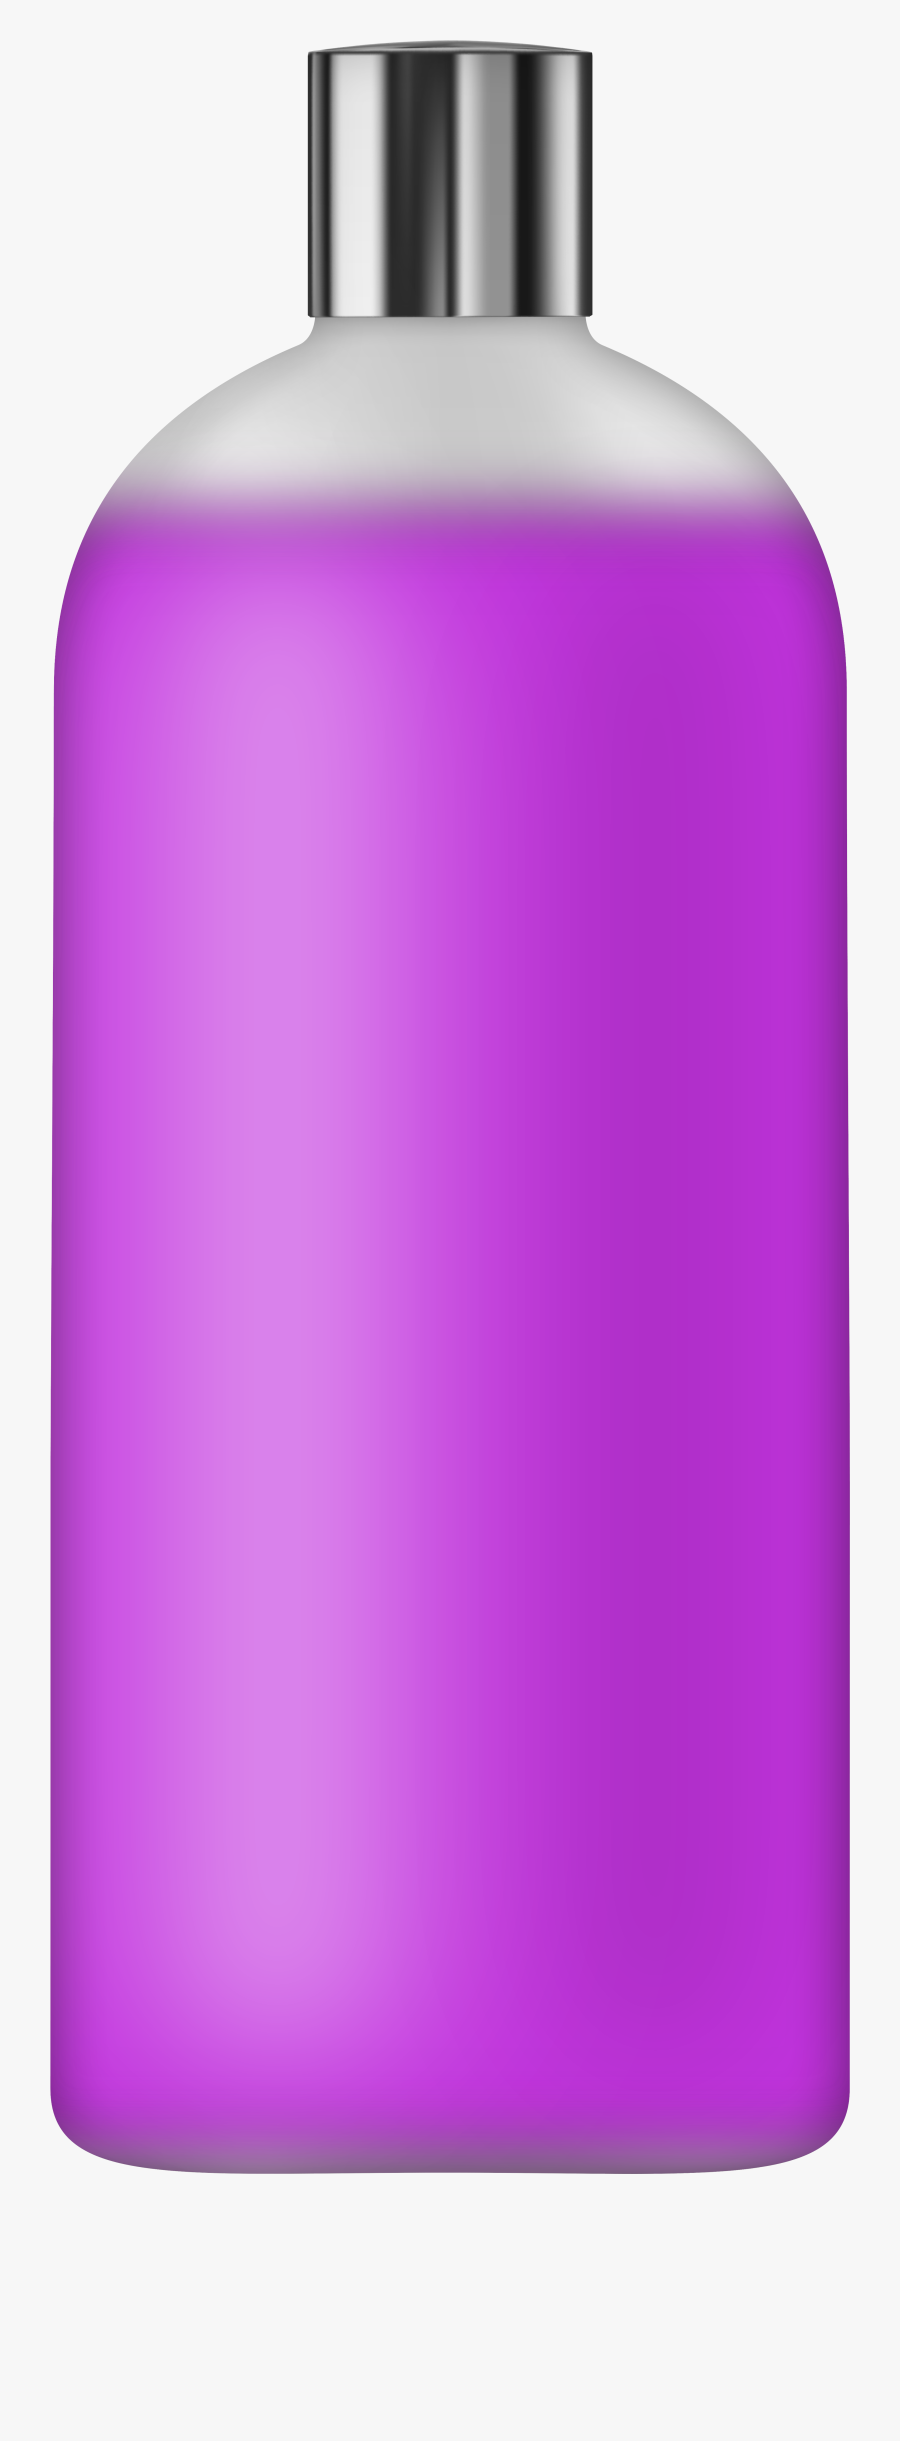 Liquid Soap Purple Png Clip Art, Transparent Clipart